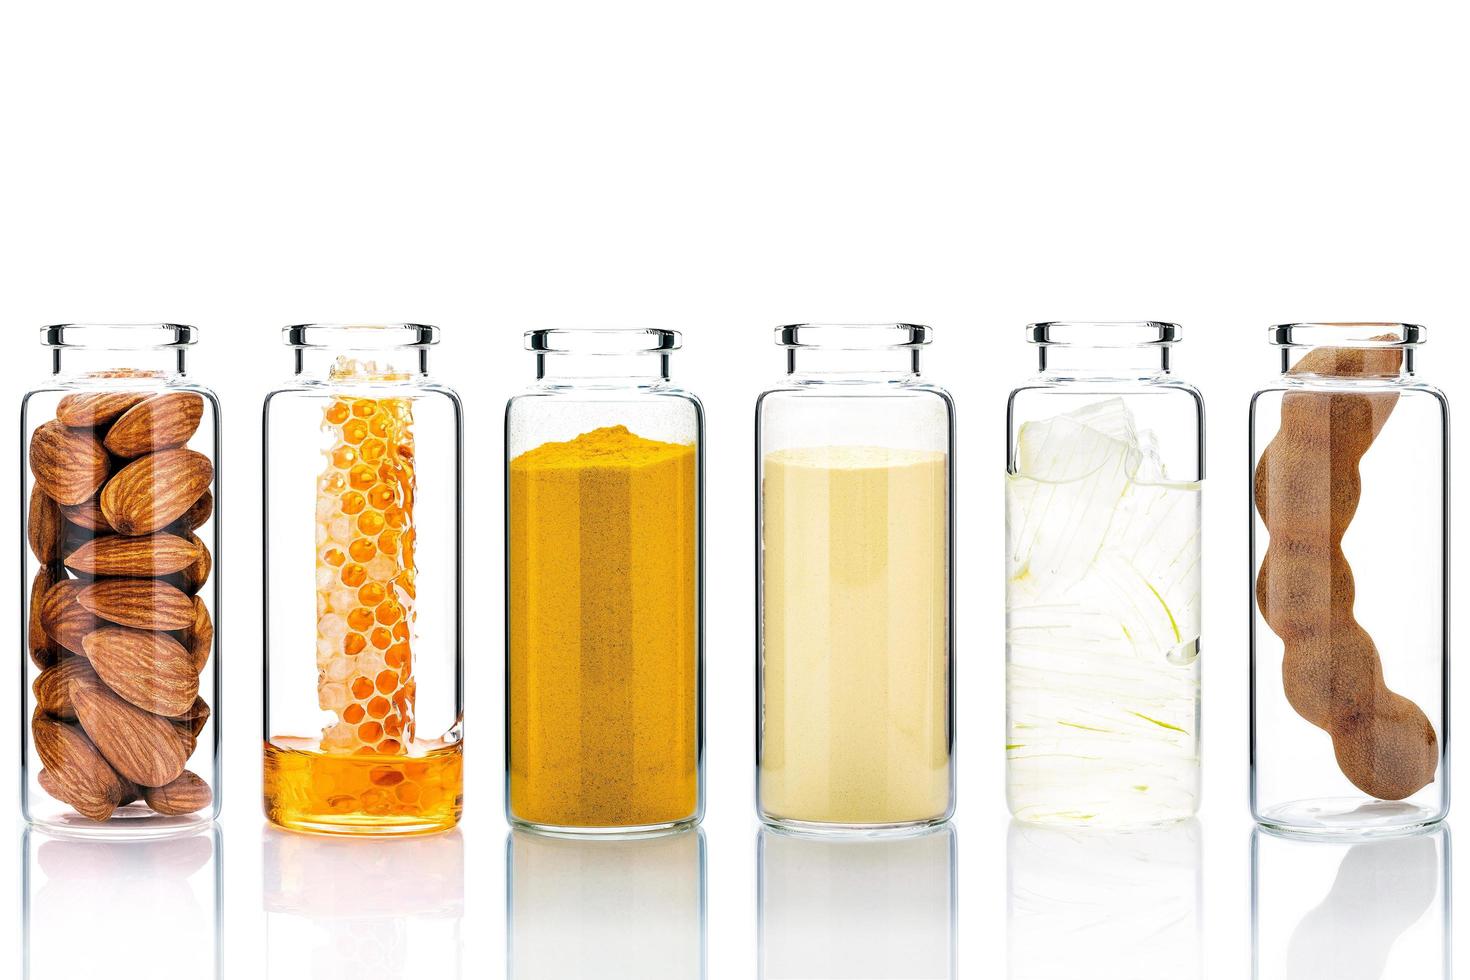 alternative Hautpflege und hausgemachte Peelings mit natürlichen Inhaltsstoffen in Glasflaschen foto